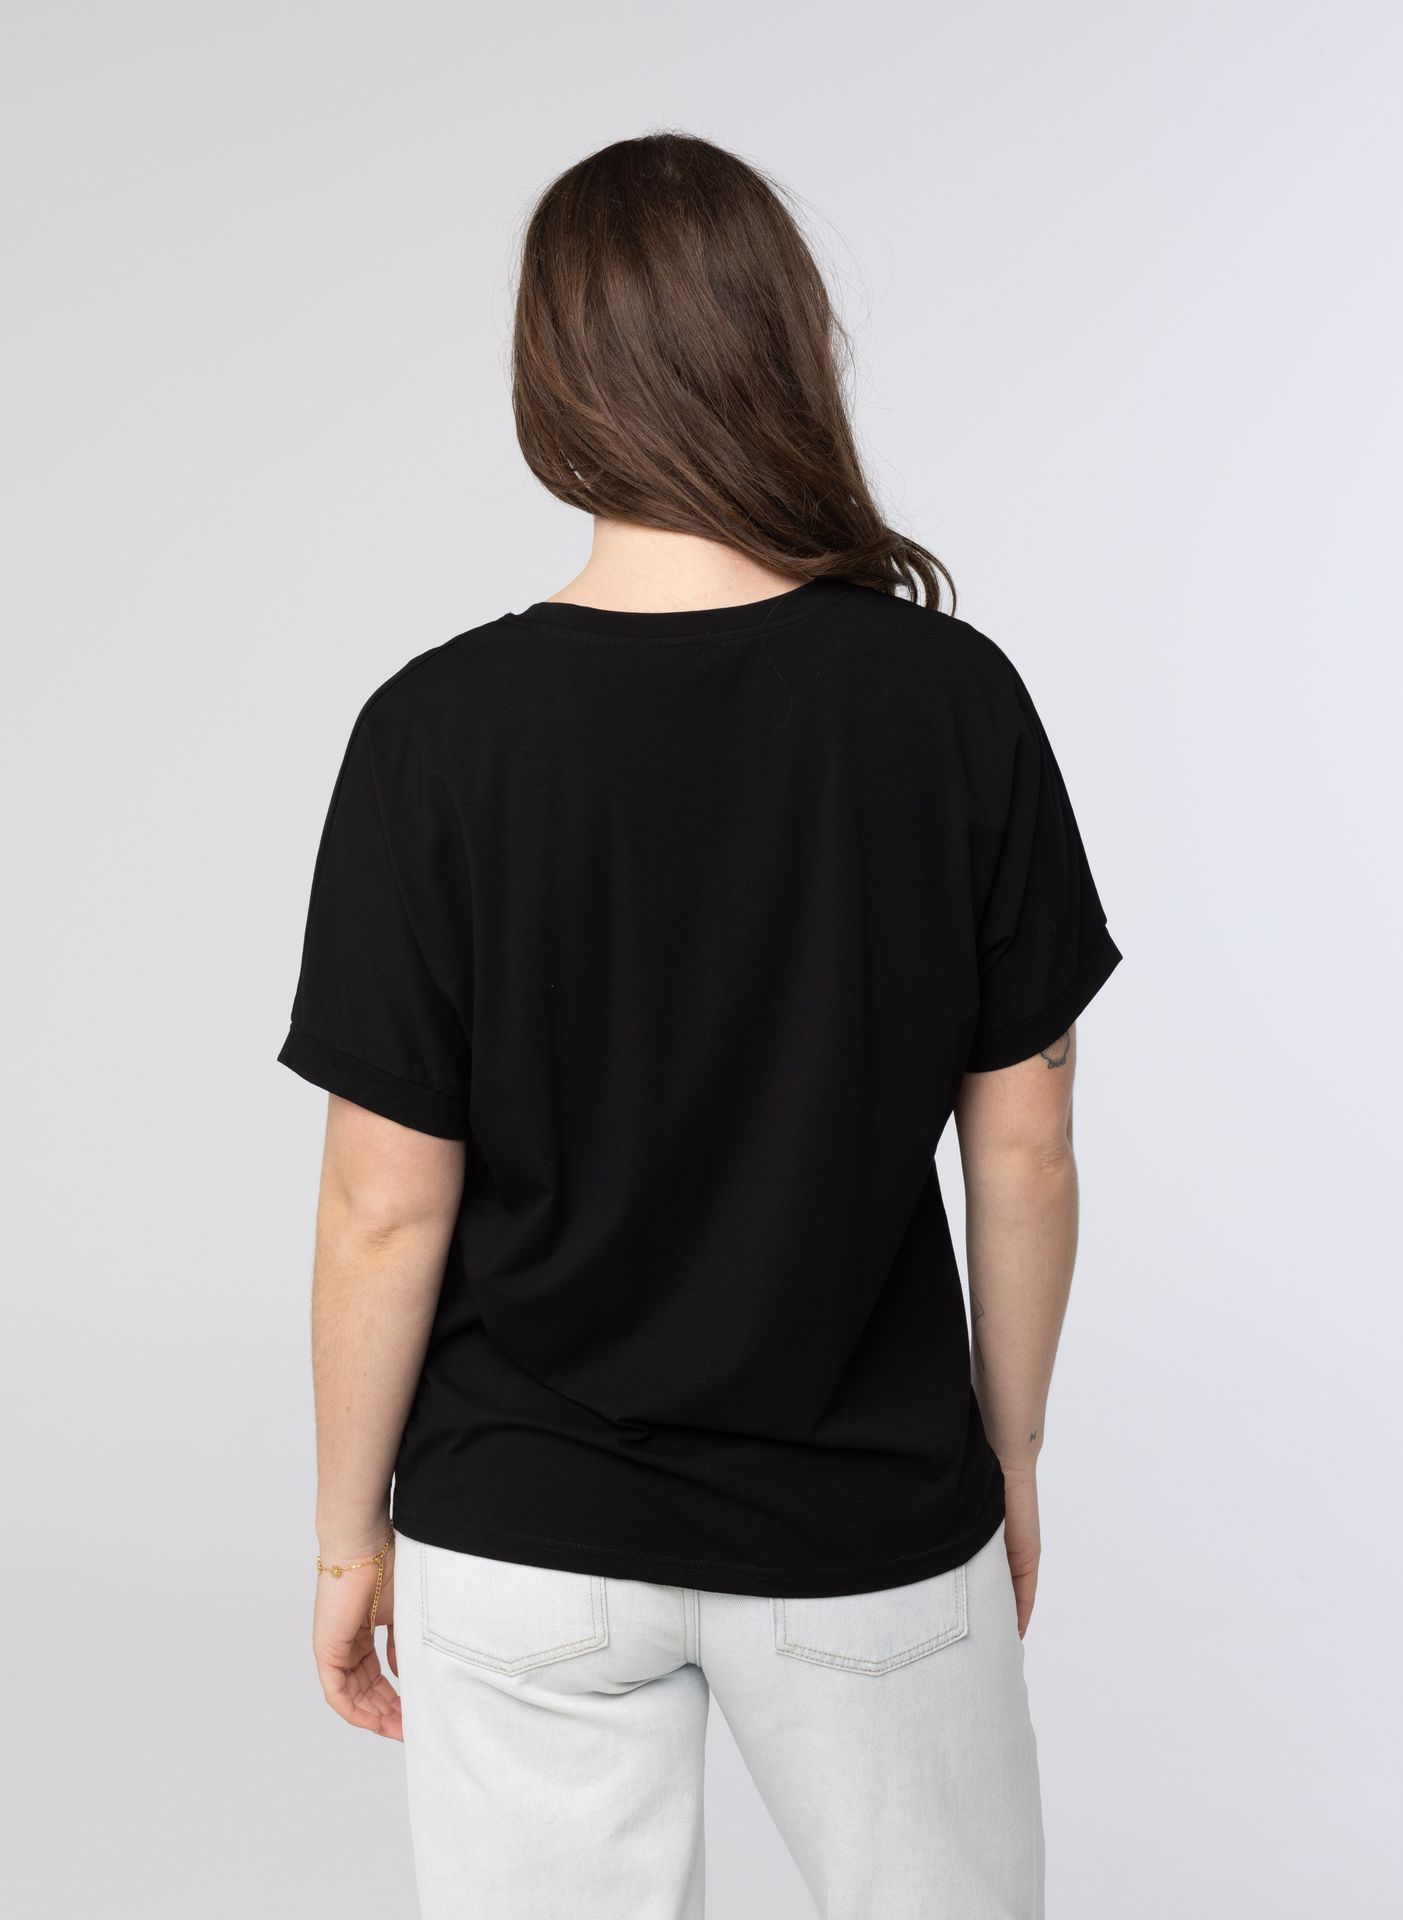 Norah Zwart shirt met tekst black 214240-001